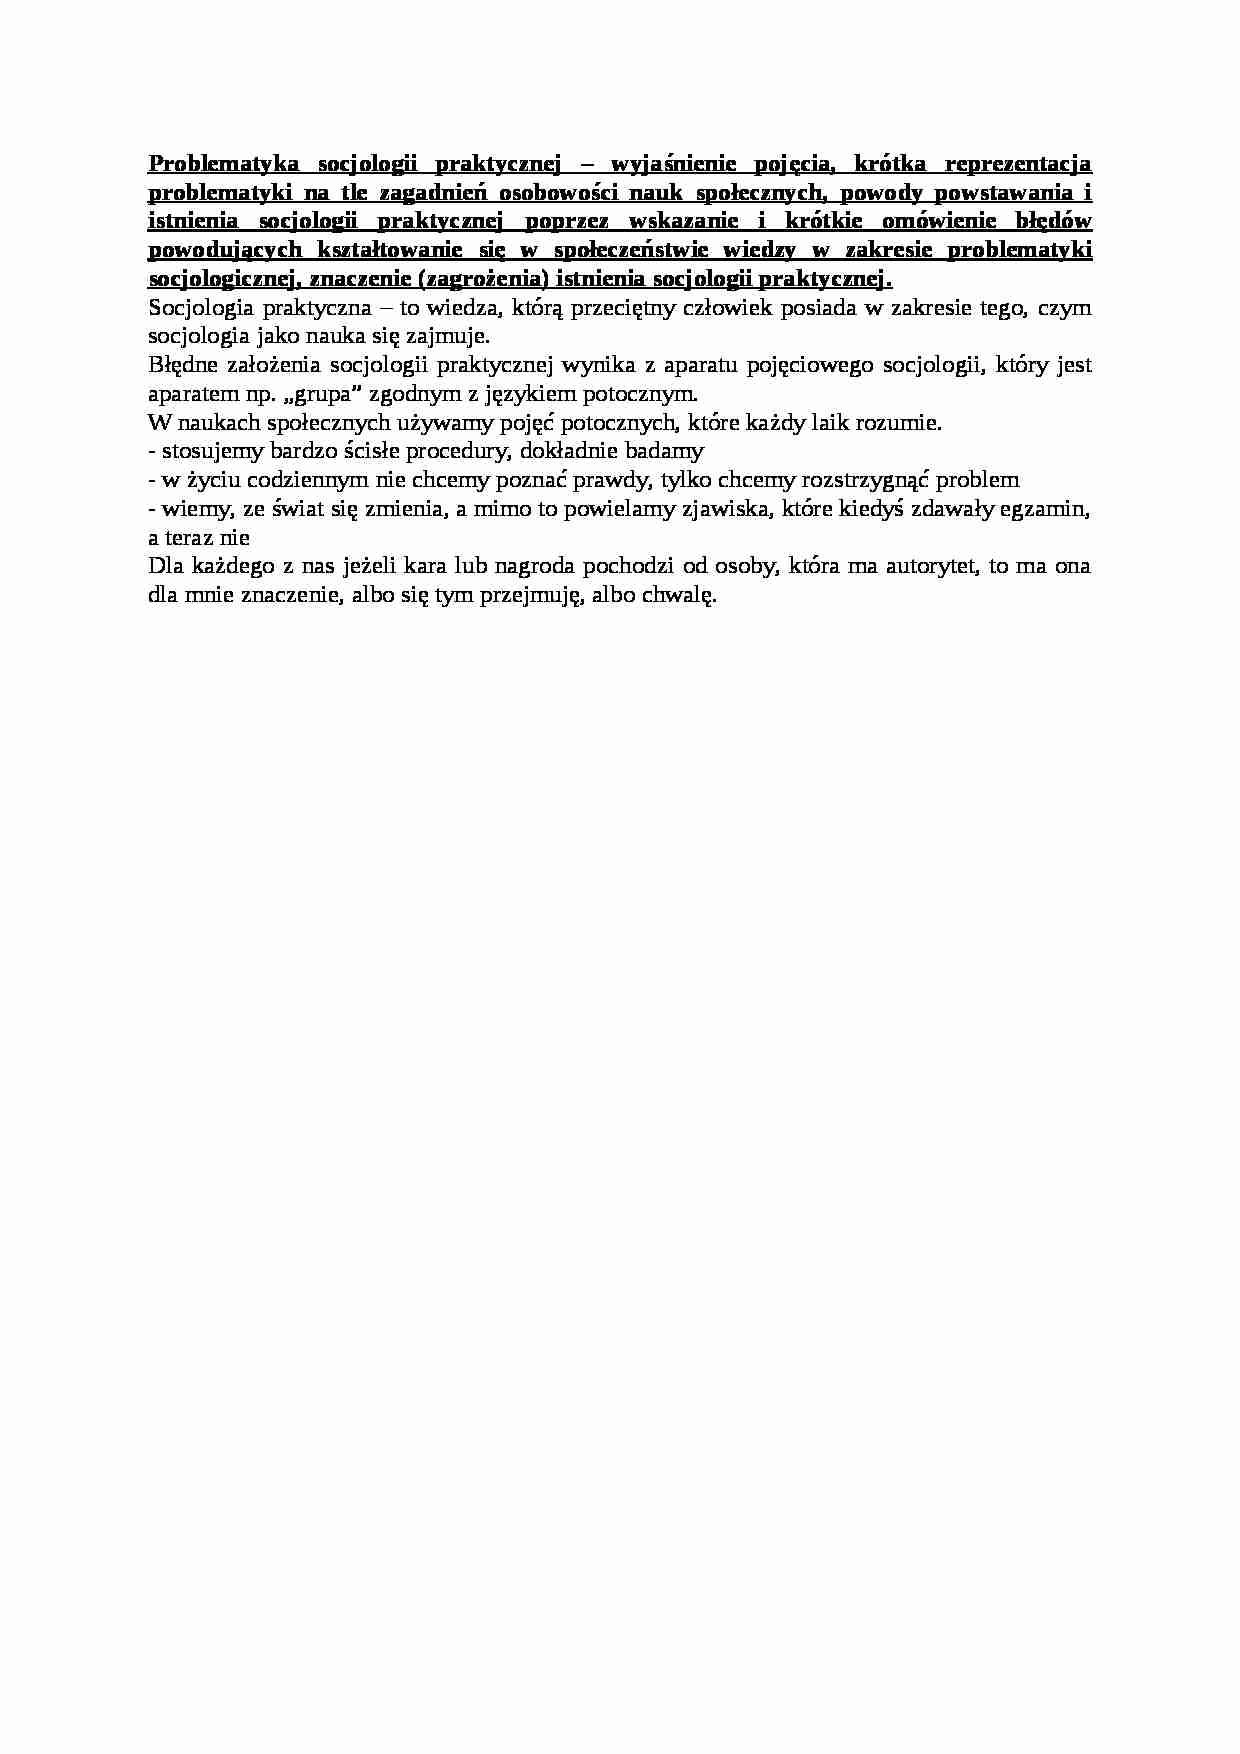 Problematyka socjologii praktycznej- opracowanie - strona 1